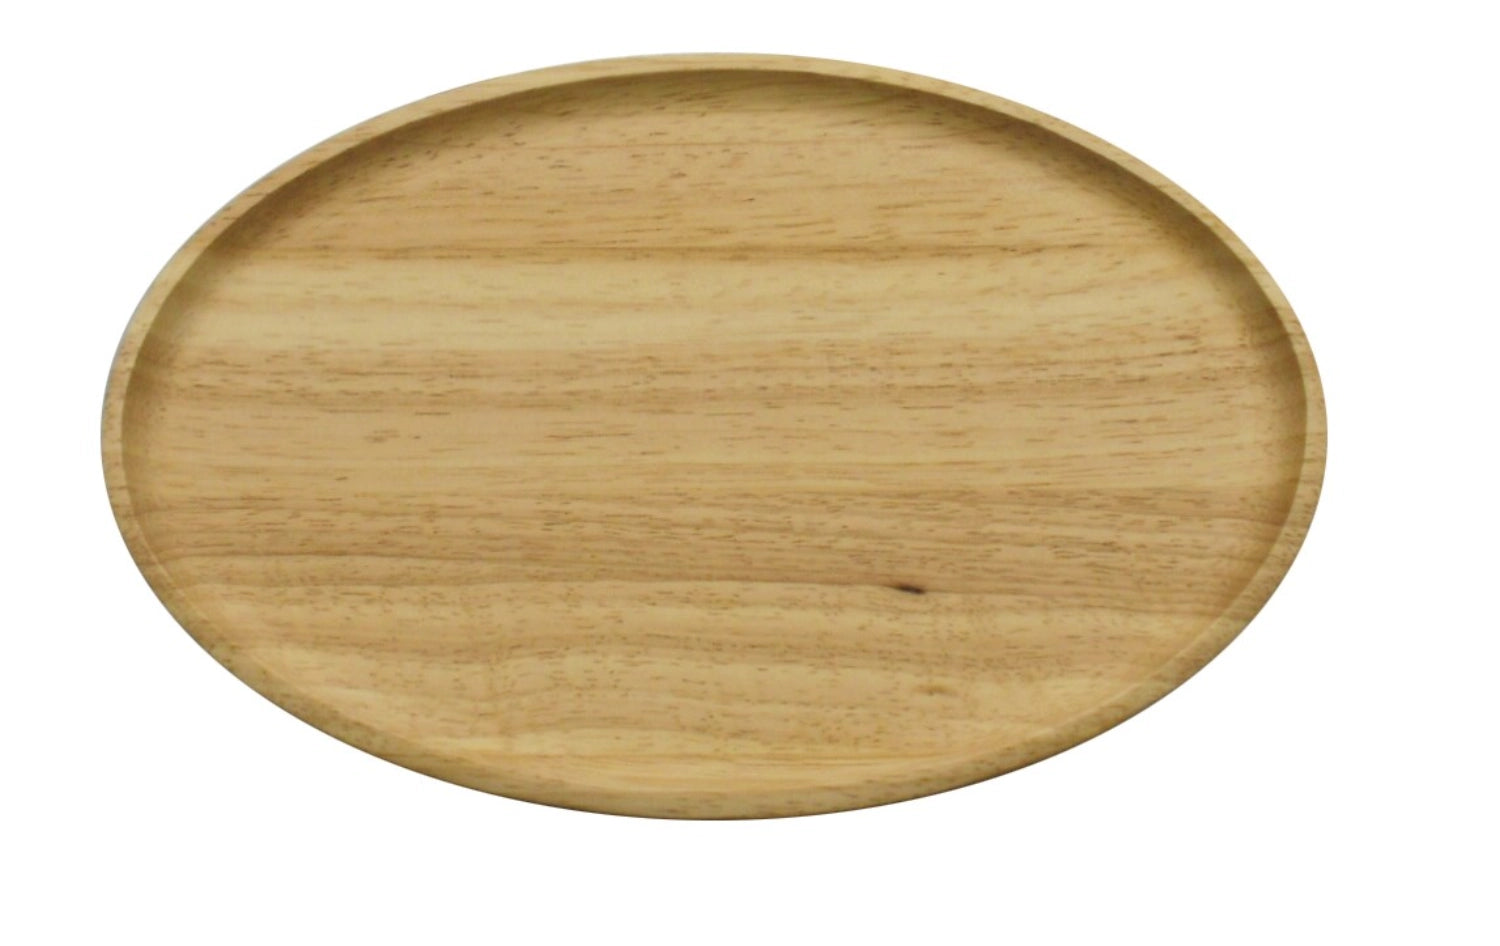 Gummibaum Tablett oval, 36.5x25x2 cm - KAQTU Design